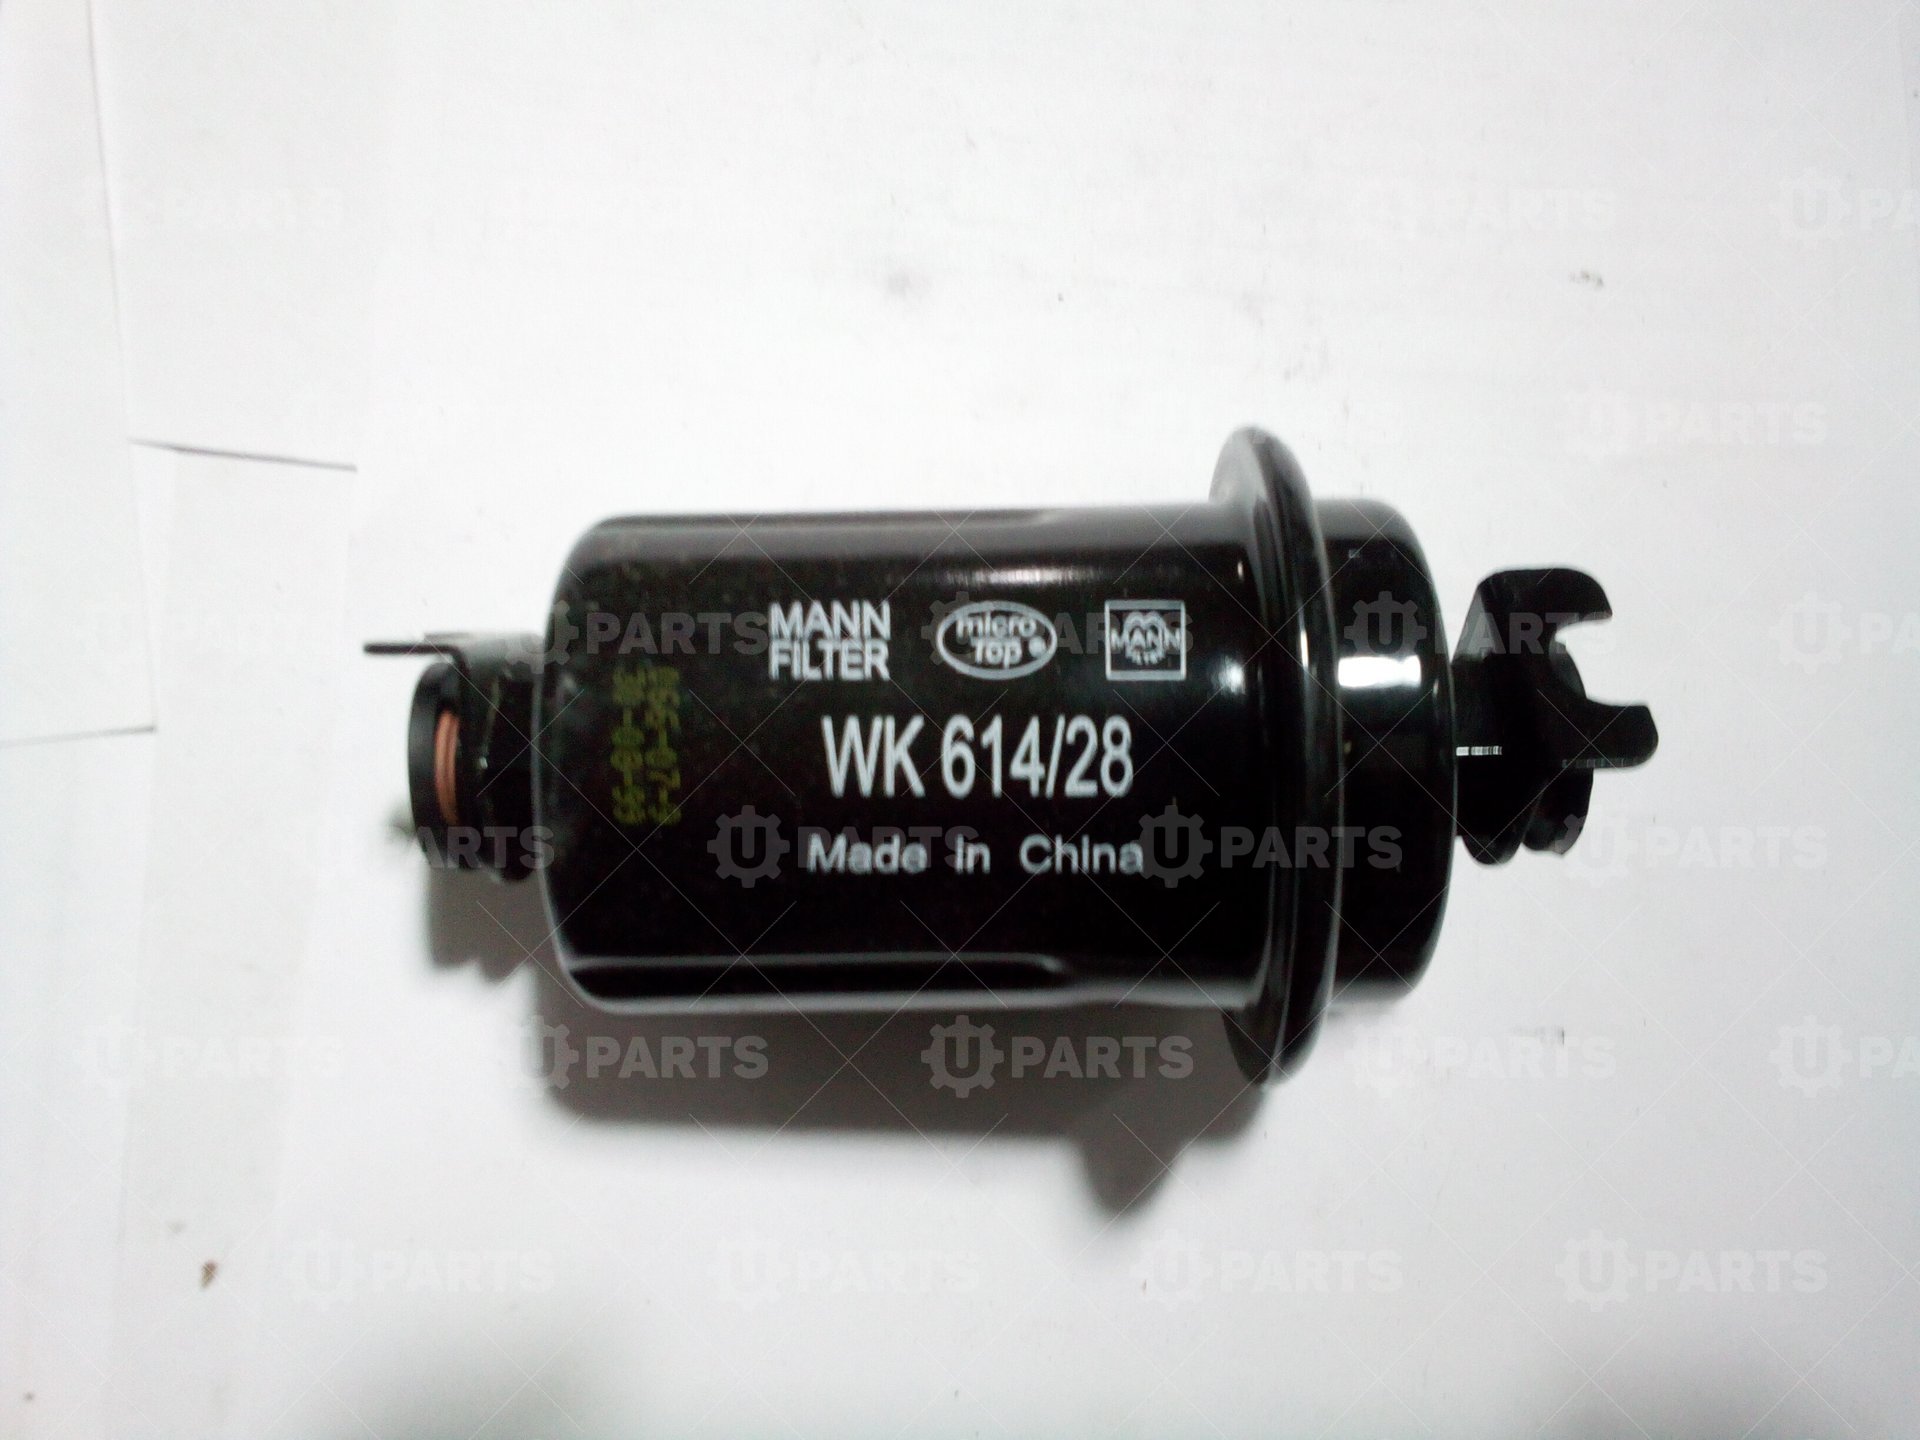 Фильтр топливный WK 614/28 (OEM 3190036000) | WK614/28. В наличии.